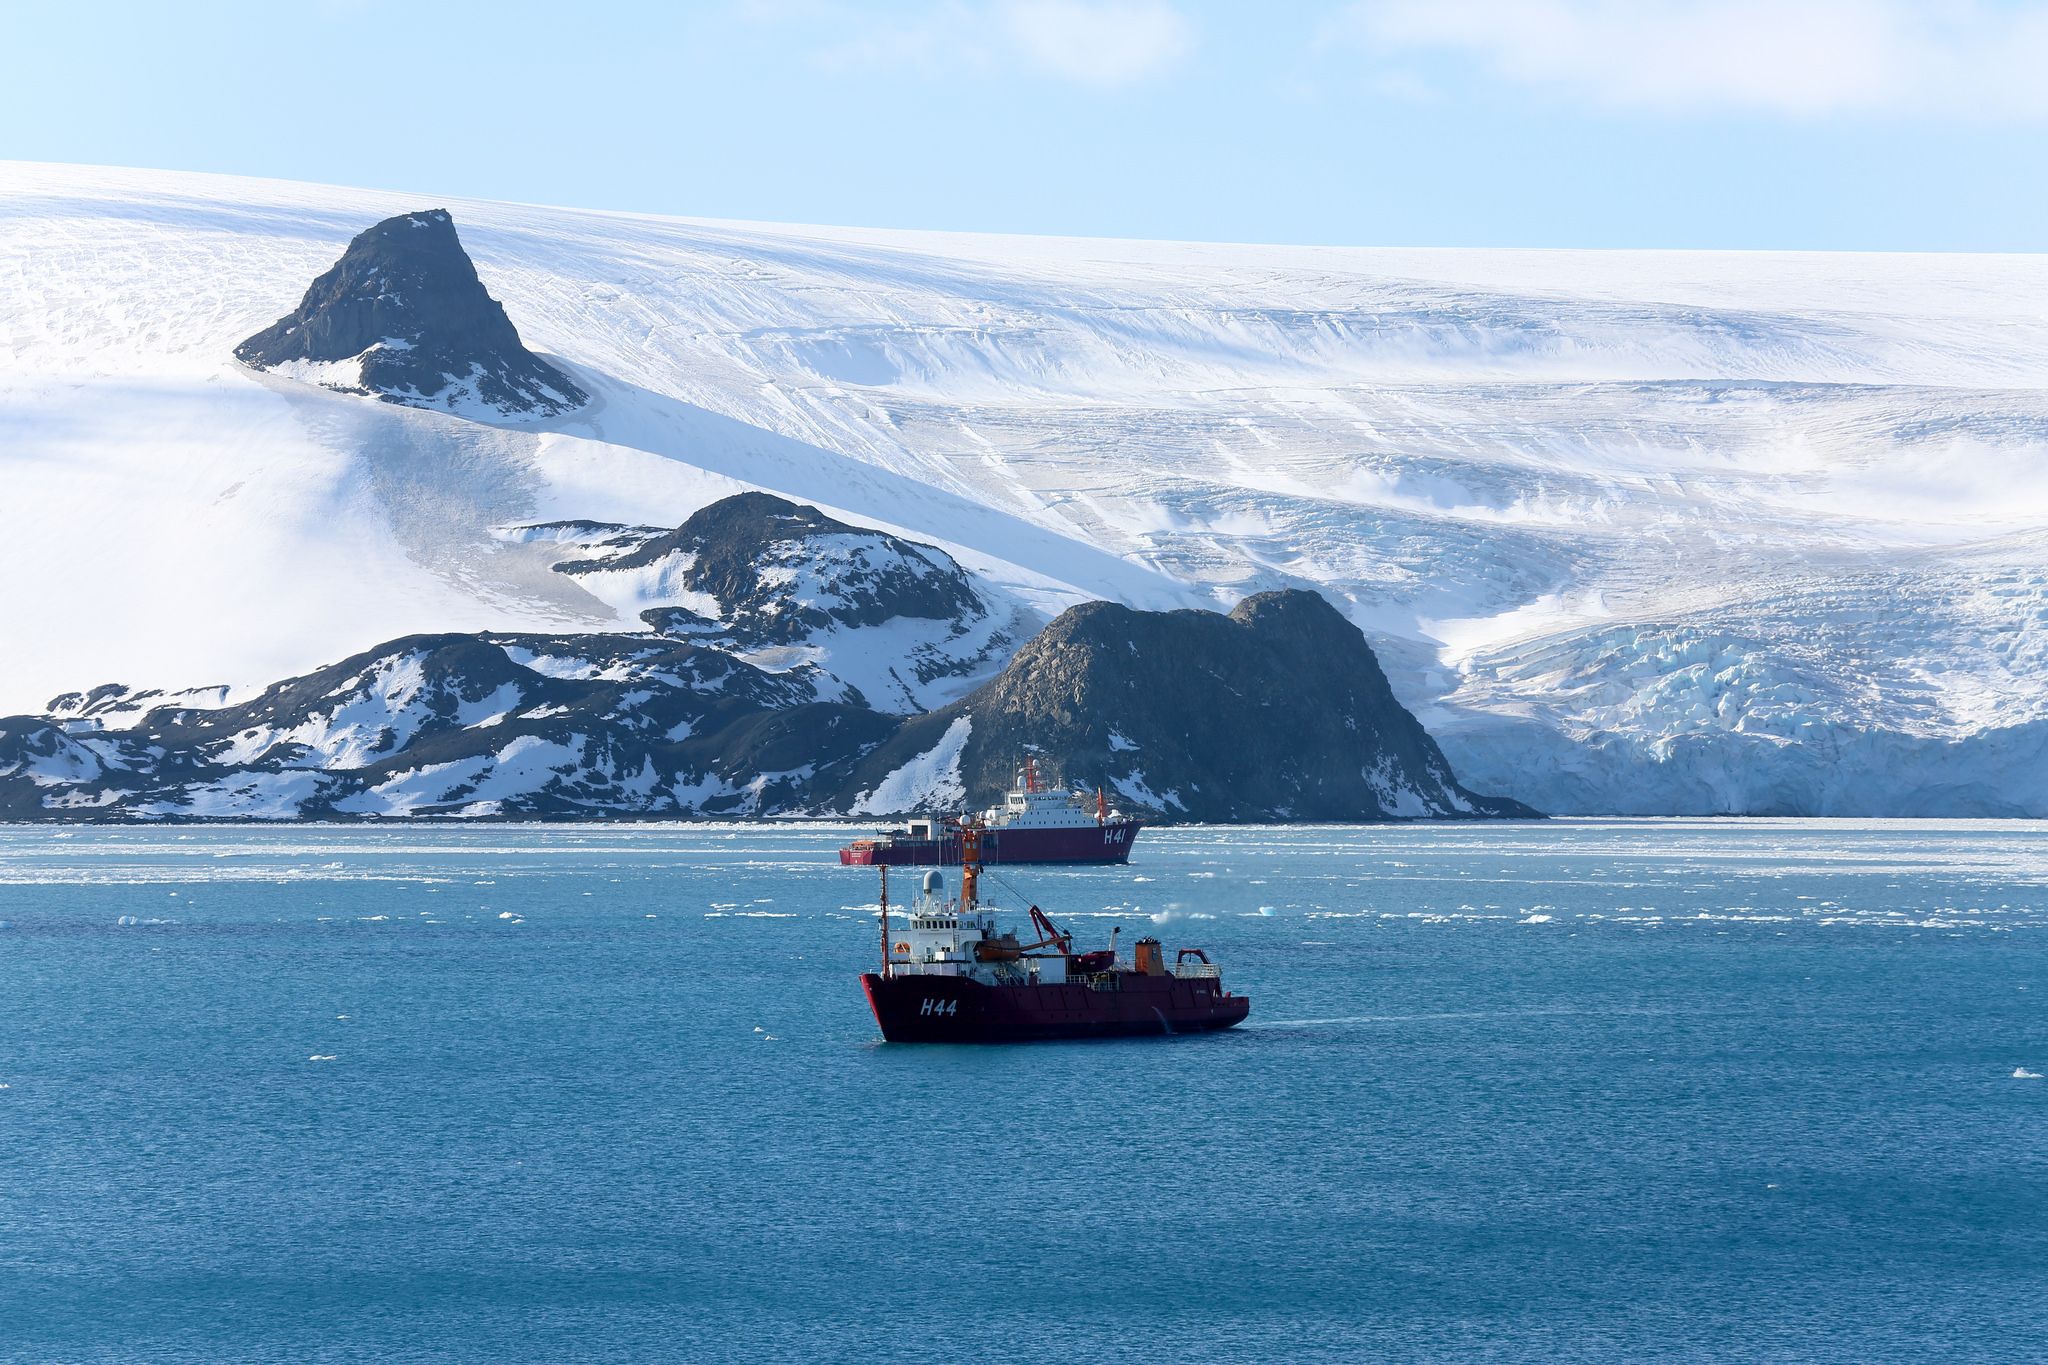 L’Antarctique, un mur de glace infranchissable selon la théorie de la Terre plate. © Marine du Brésil, Flickr